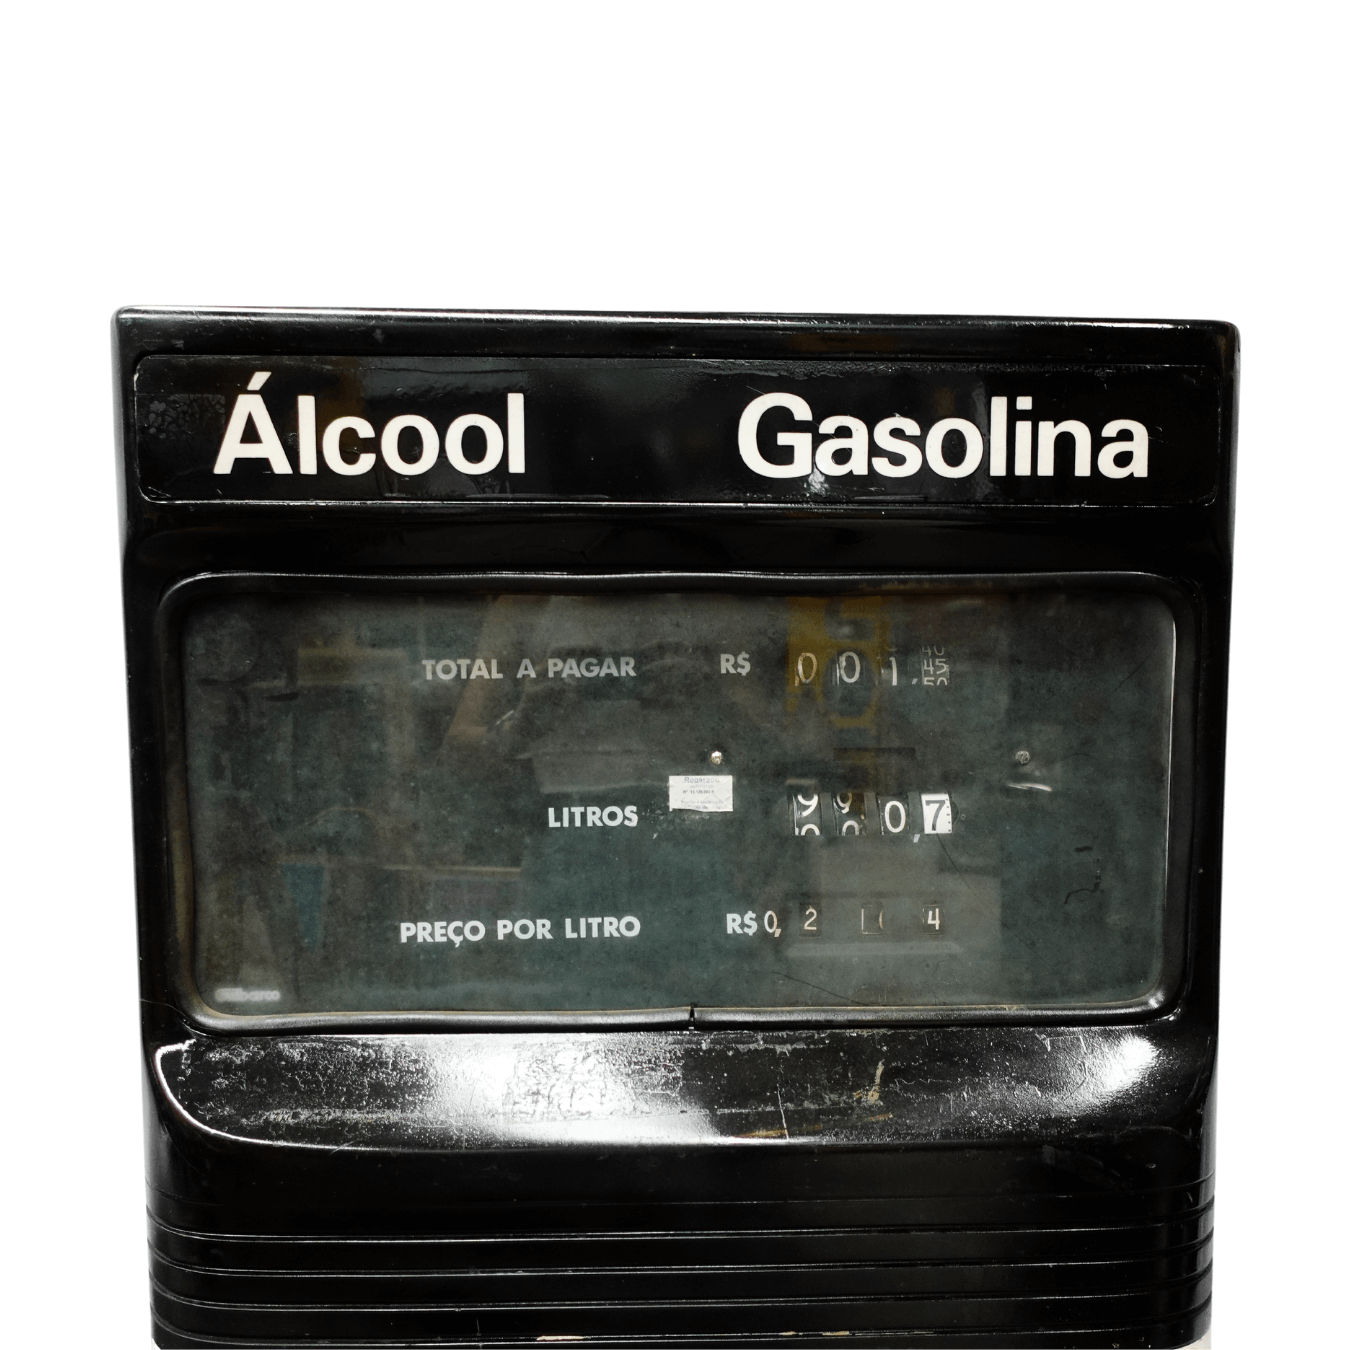 Bomba de Gasolina Esso Vintage dos anos 1990